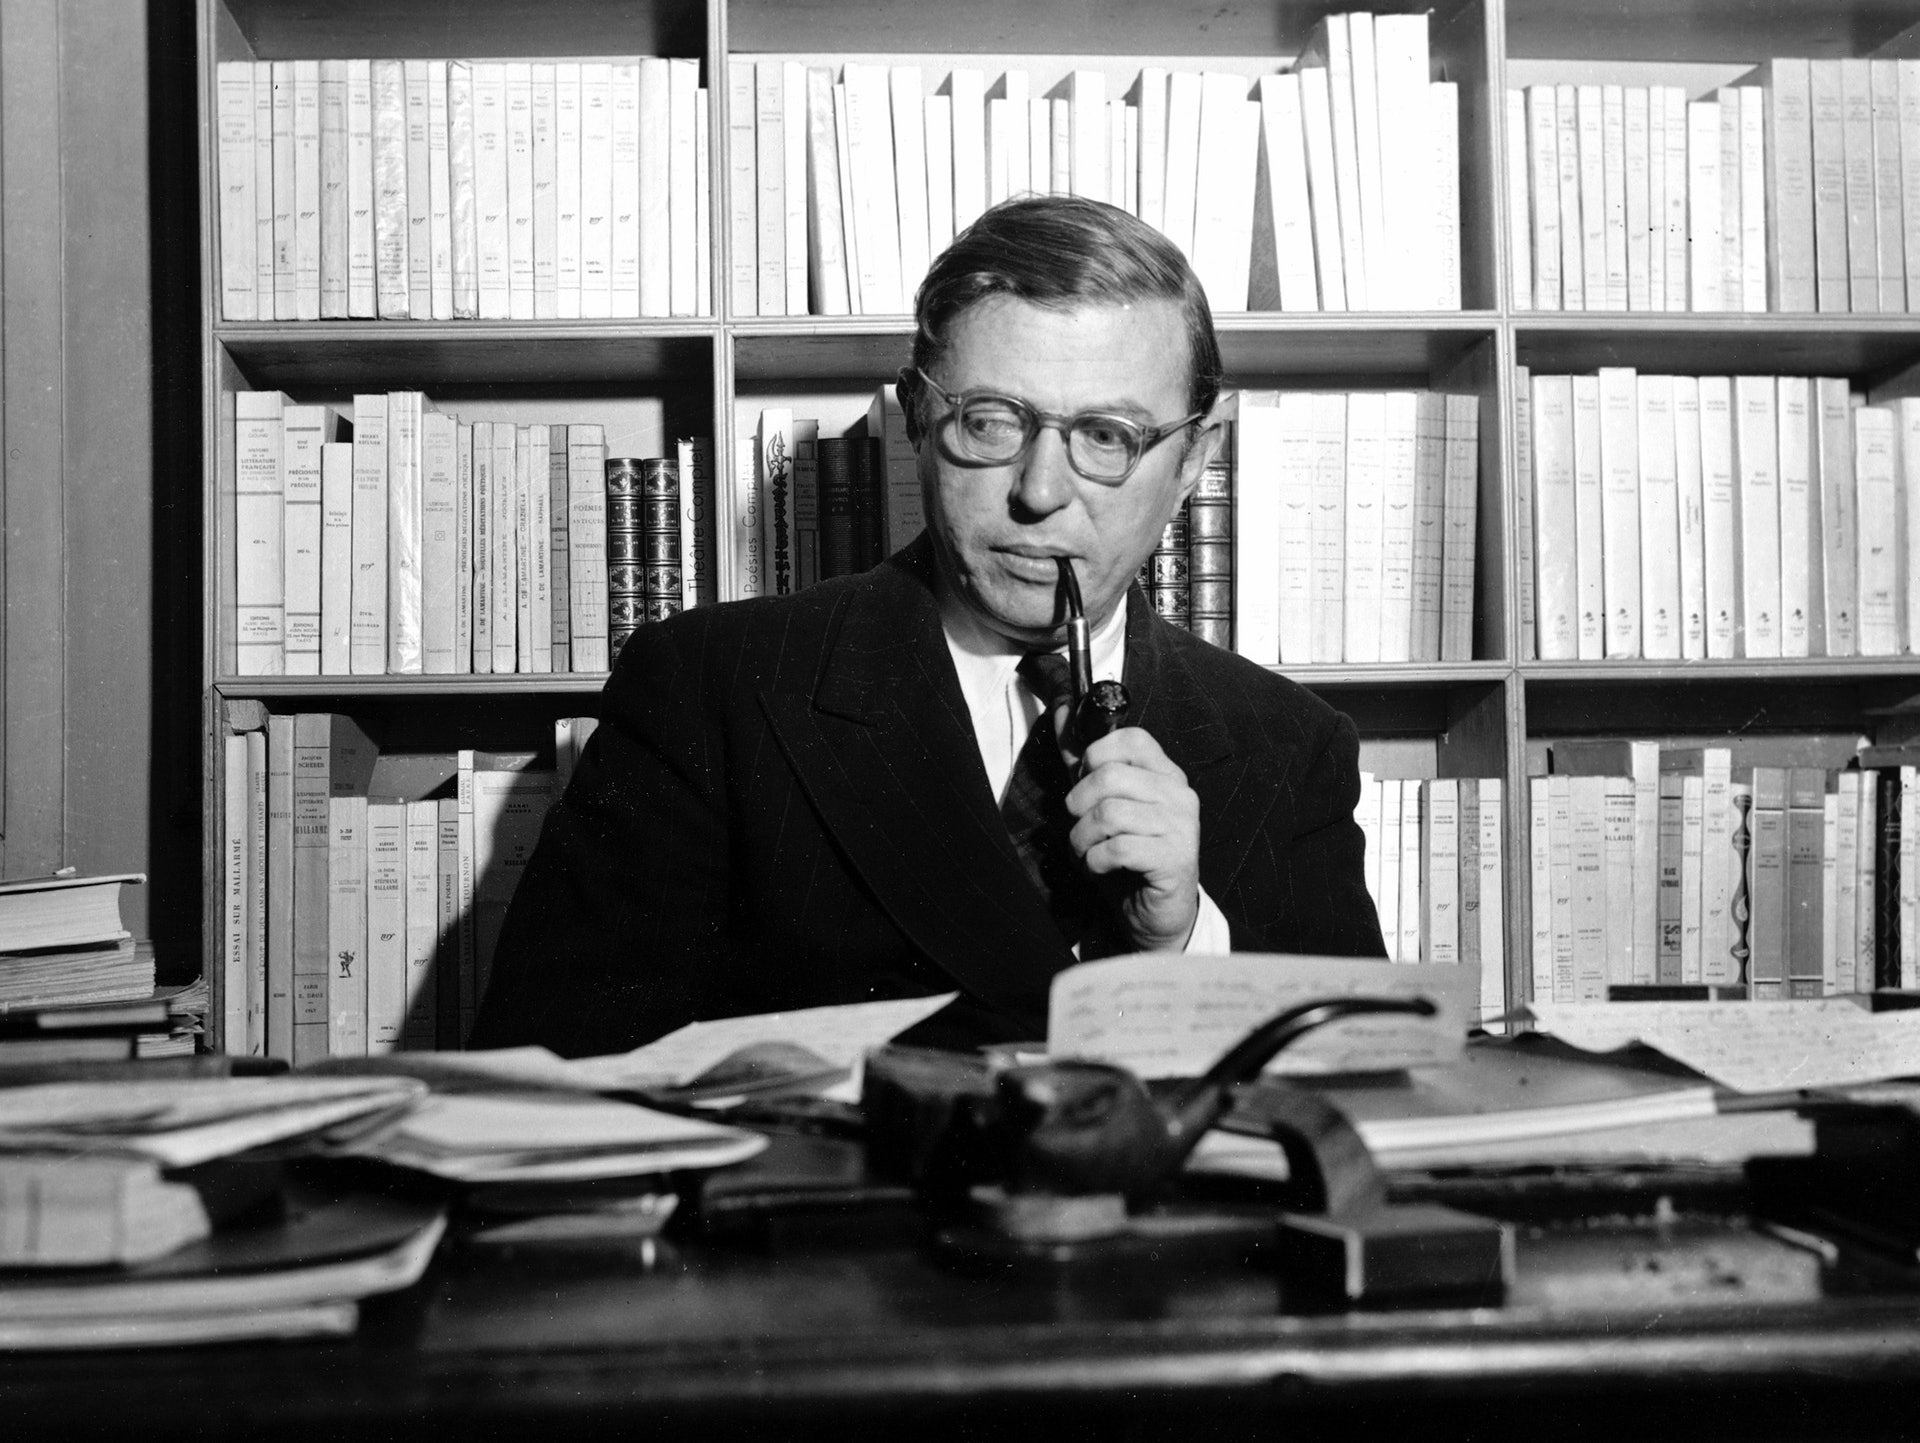 جان بول سارتر (مواقع التواصل)